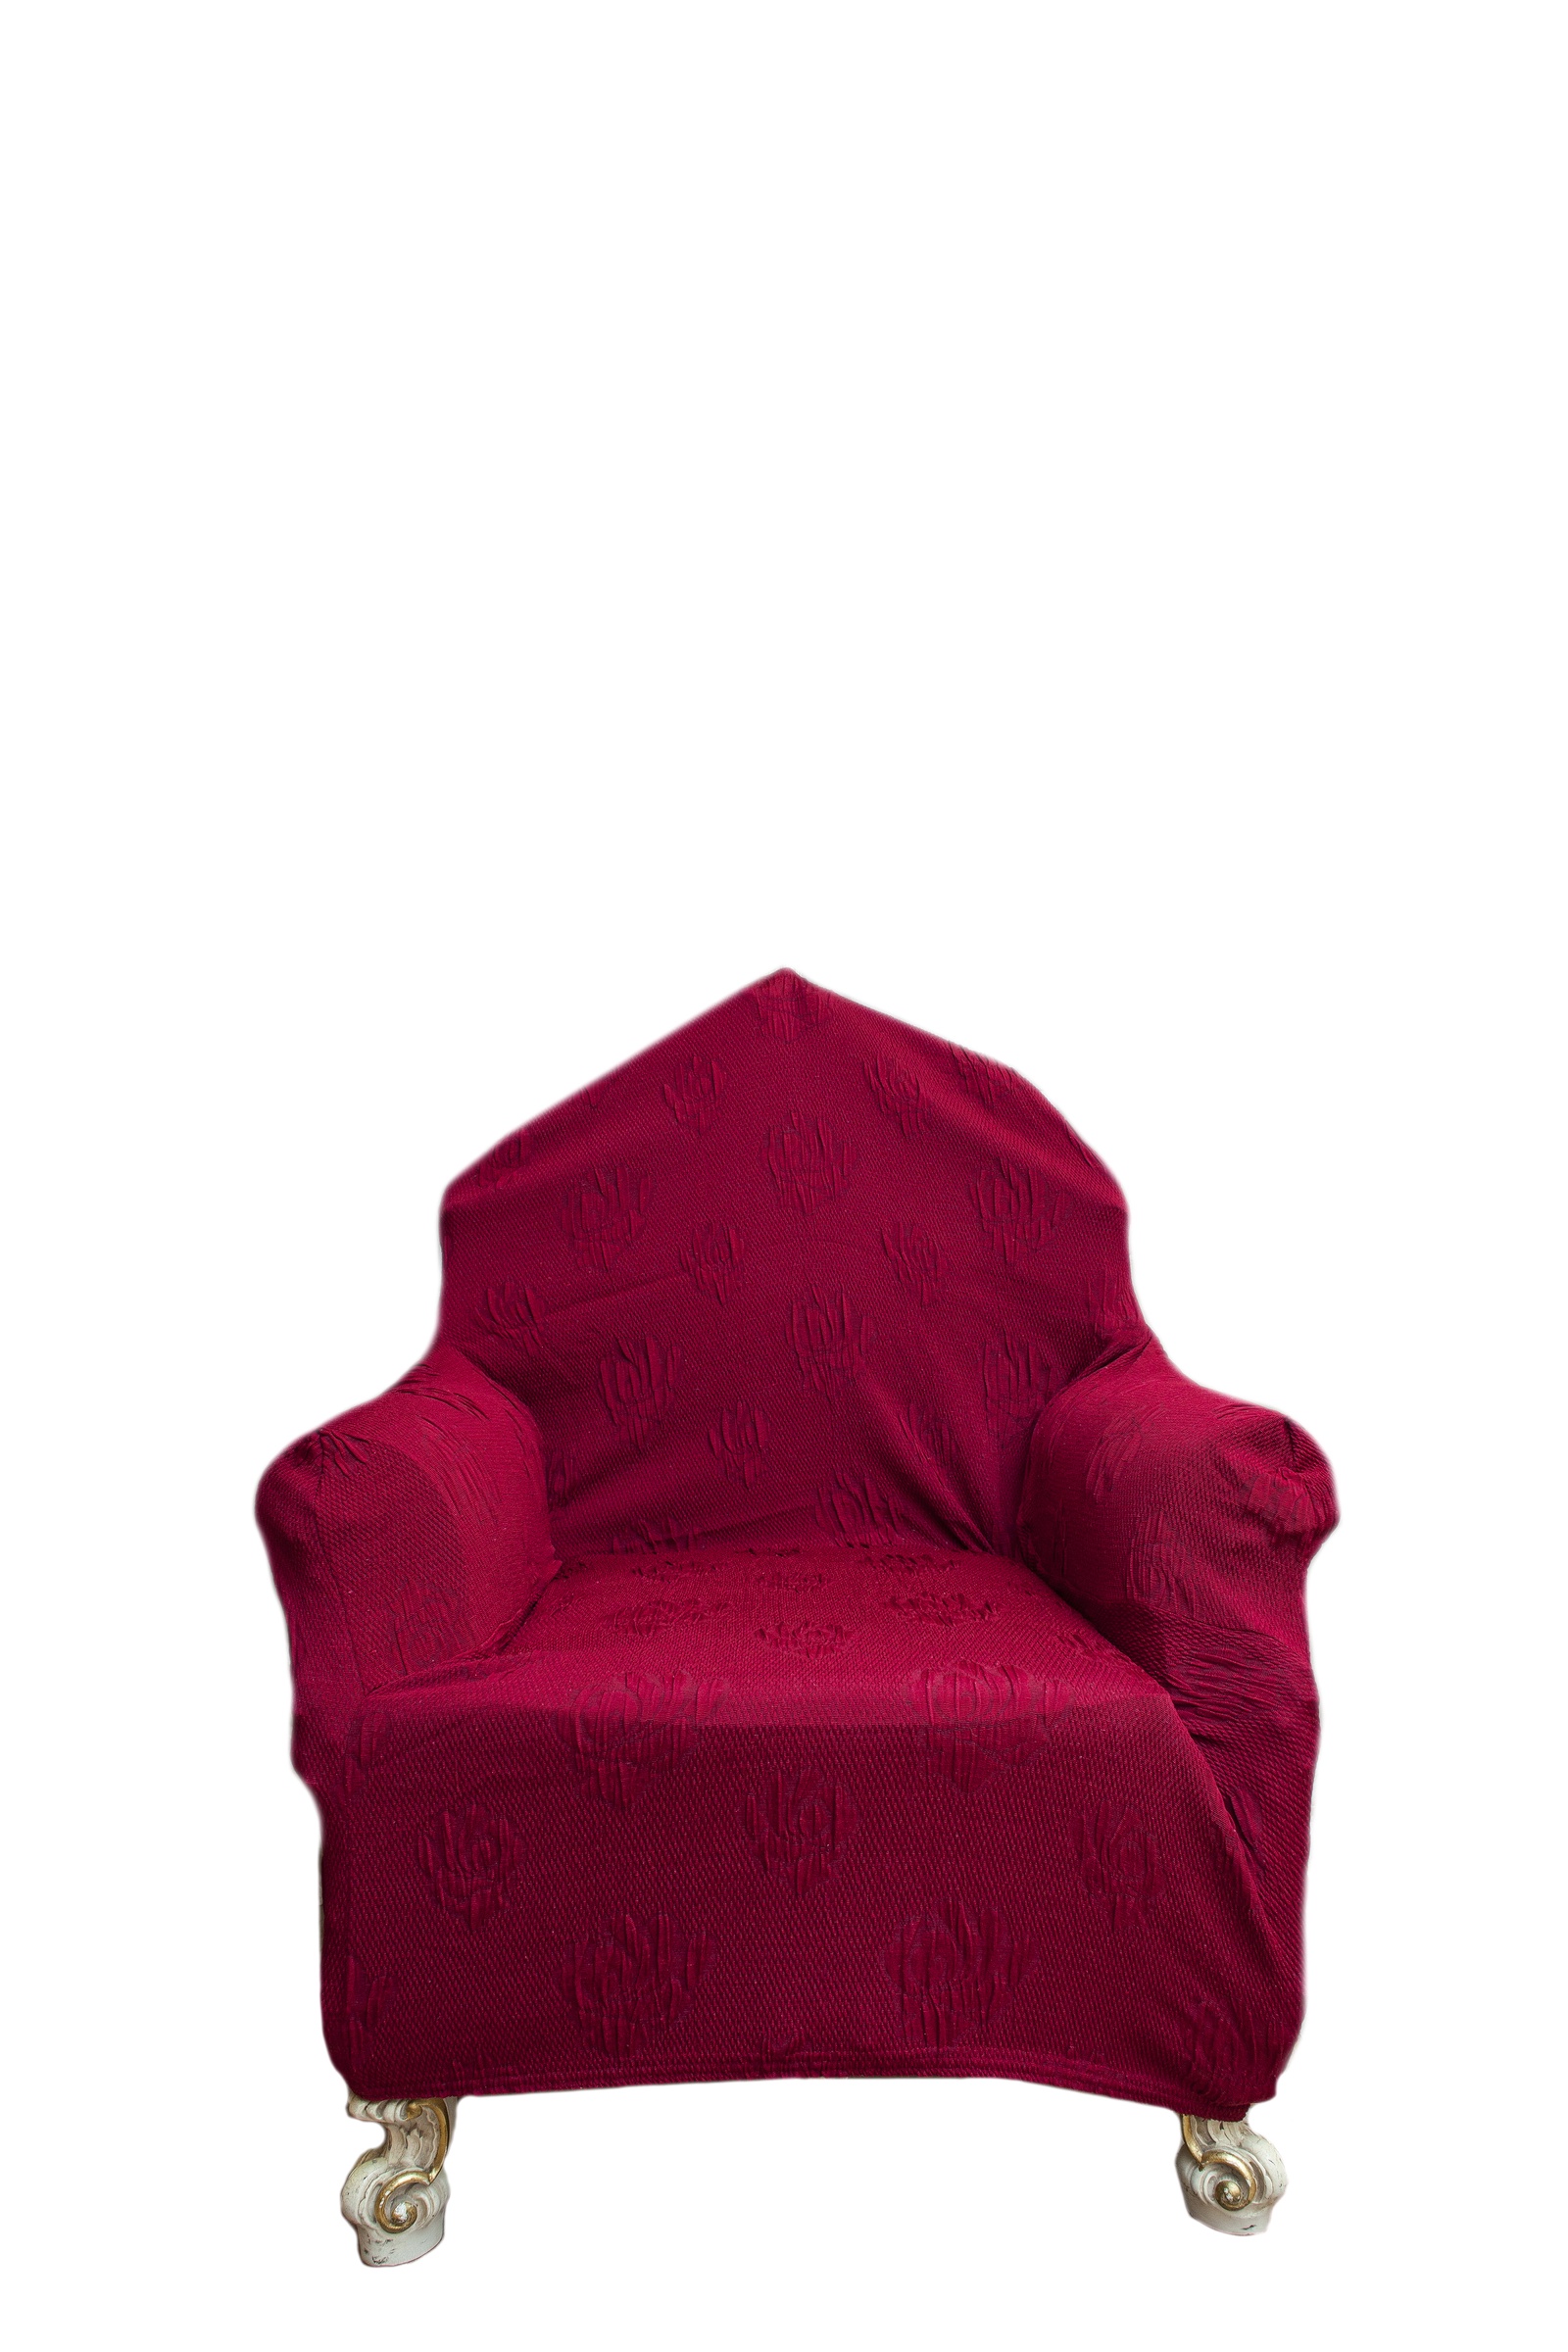 Чехол на мебель Pastel чехол на кресло, красный